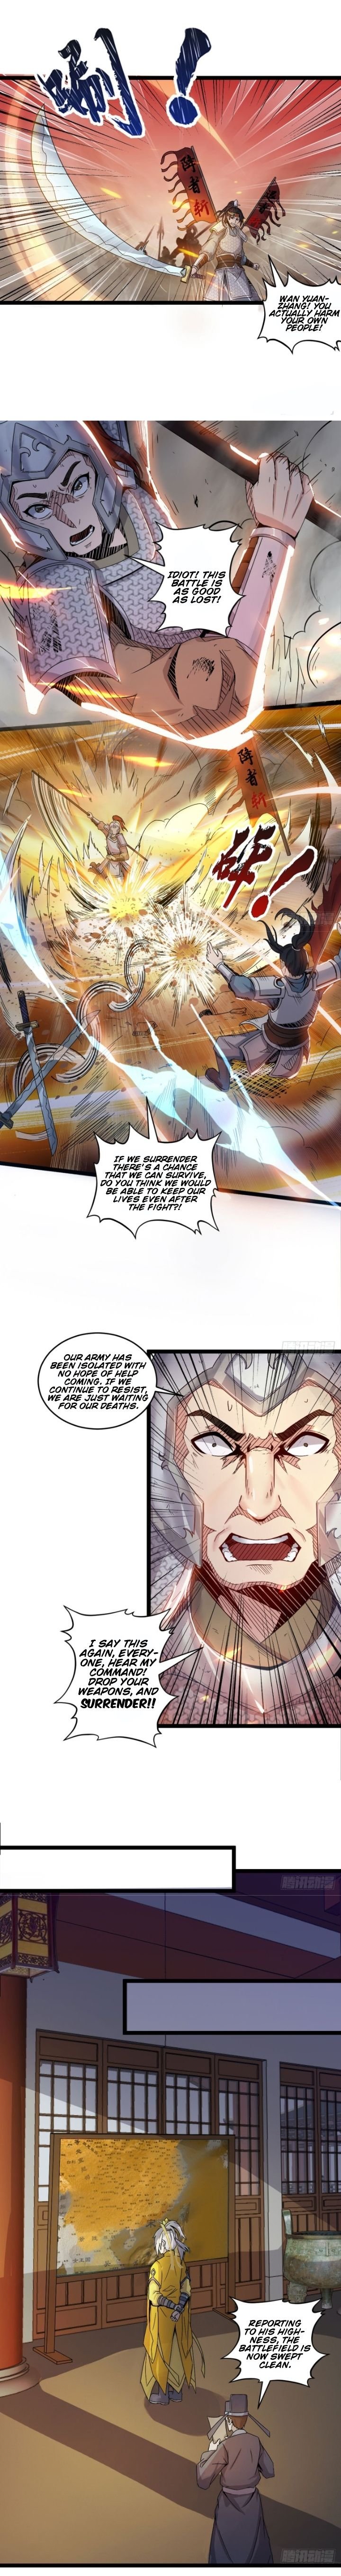 Reborn As King/emperor - Page 3